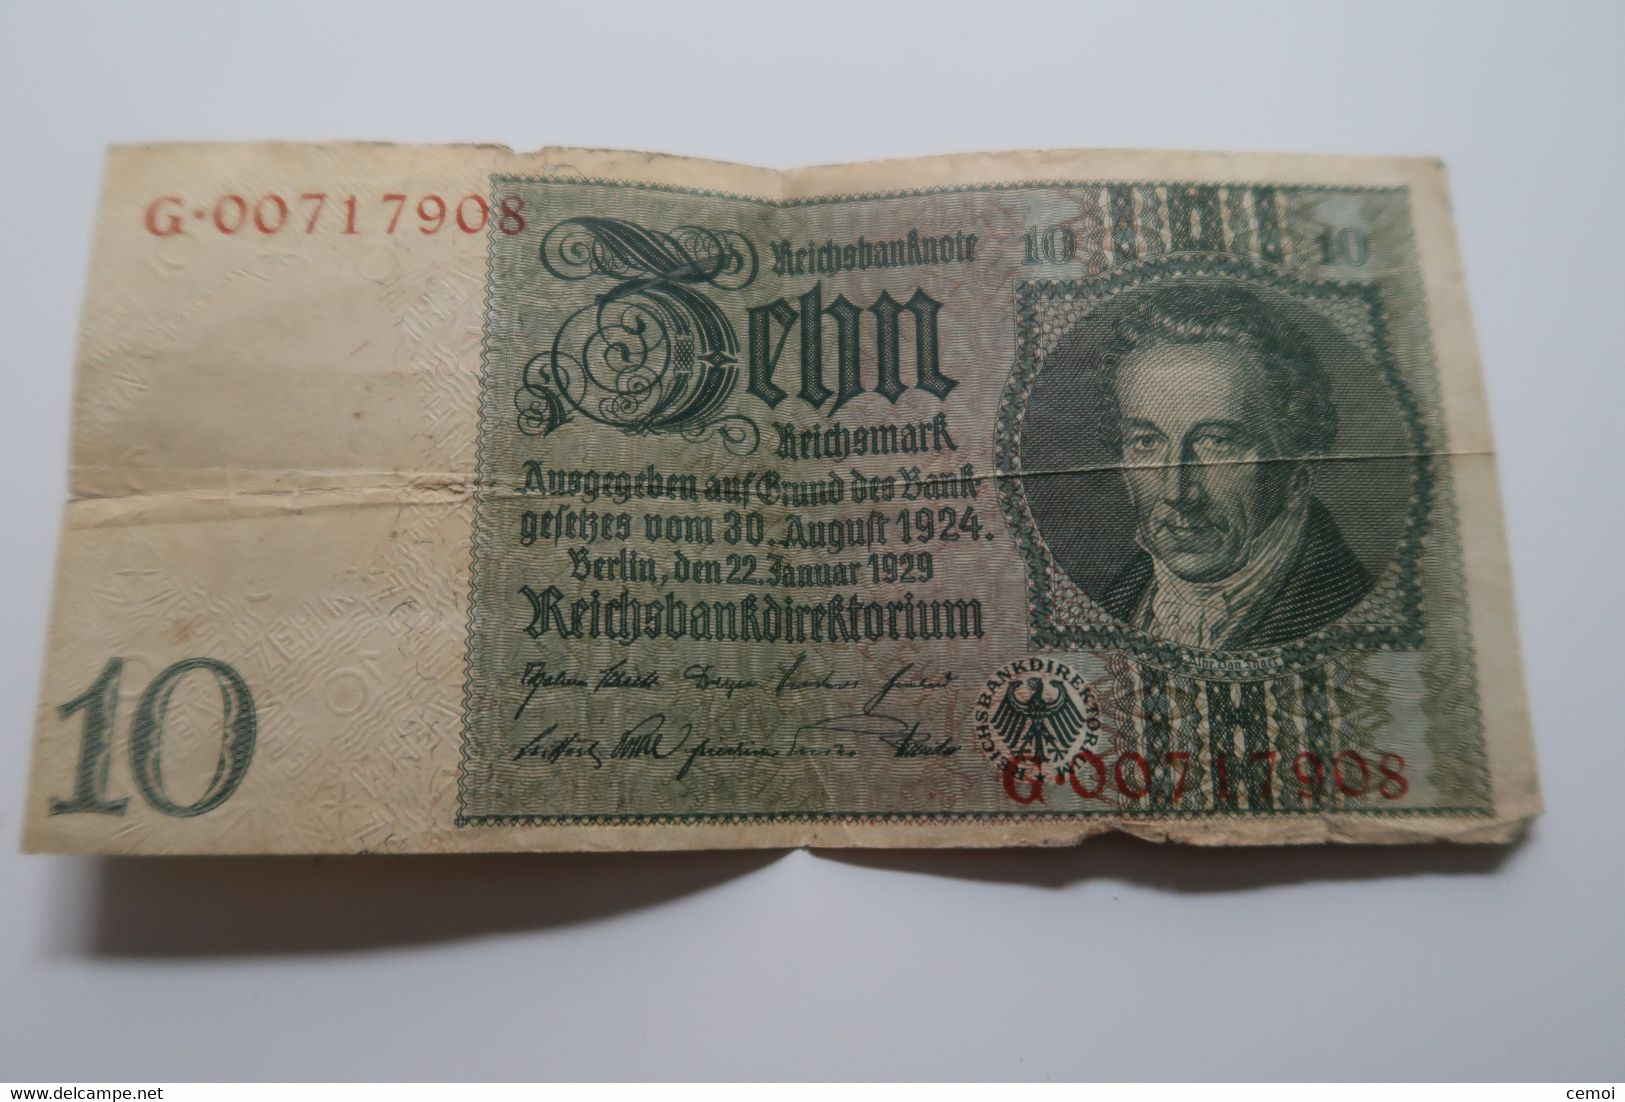 Reichbanknote 10 Marks 1929 - 10 Mark